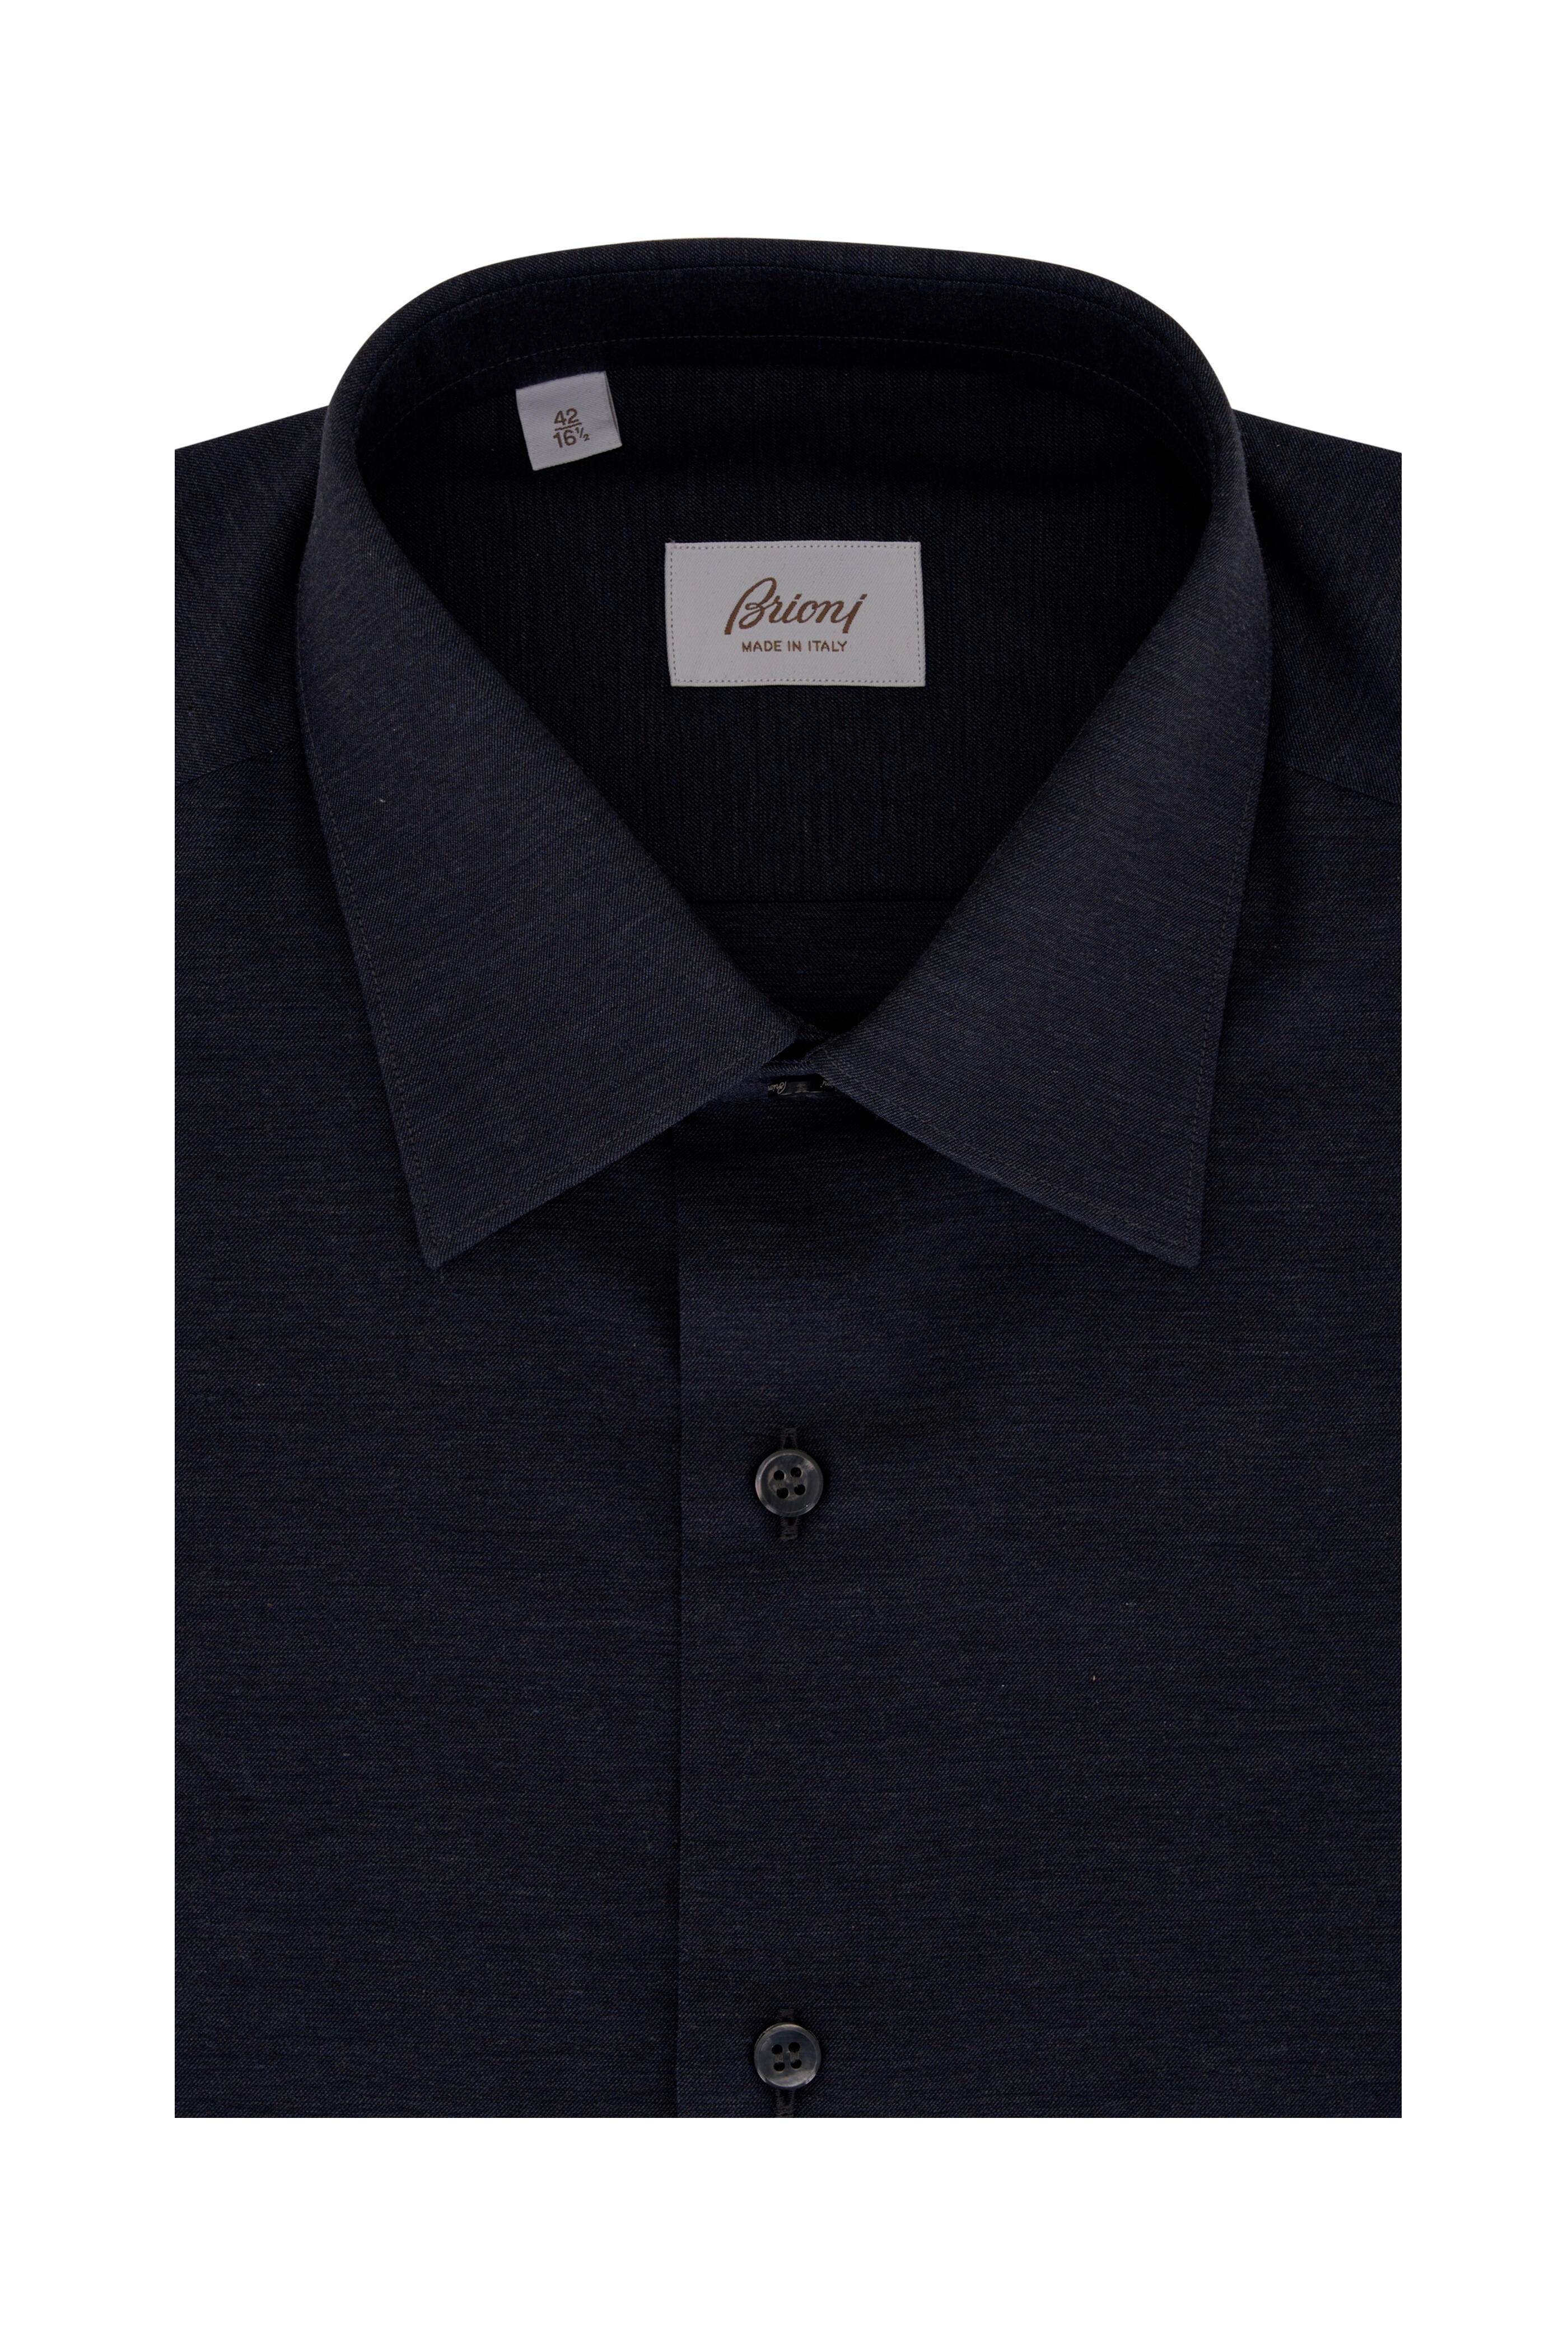 Brioni - Solid Dark Blue Cotton Sport Shirt | Mitchell Stores